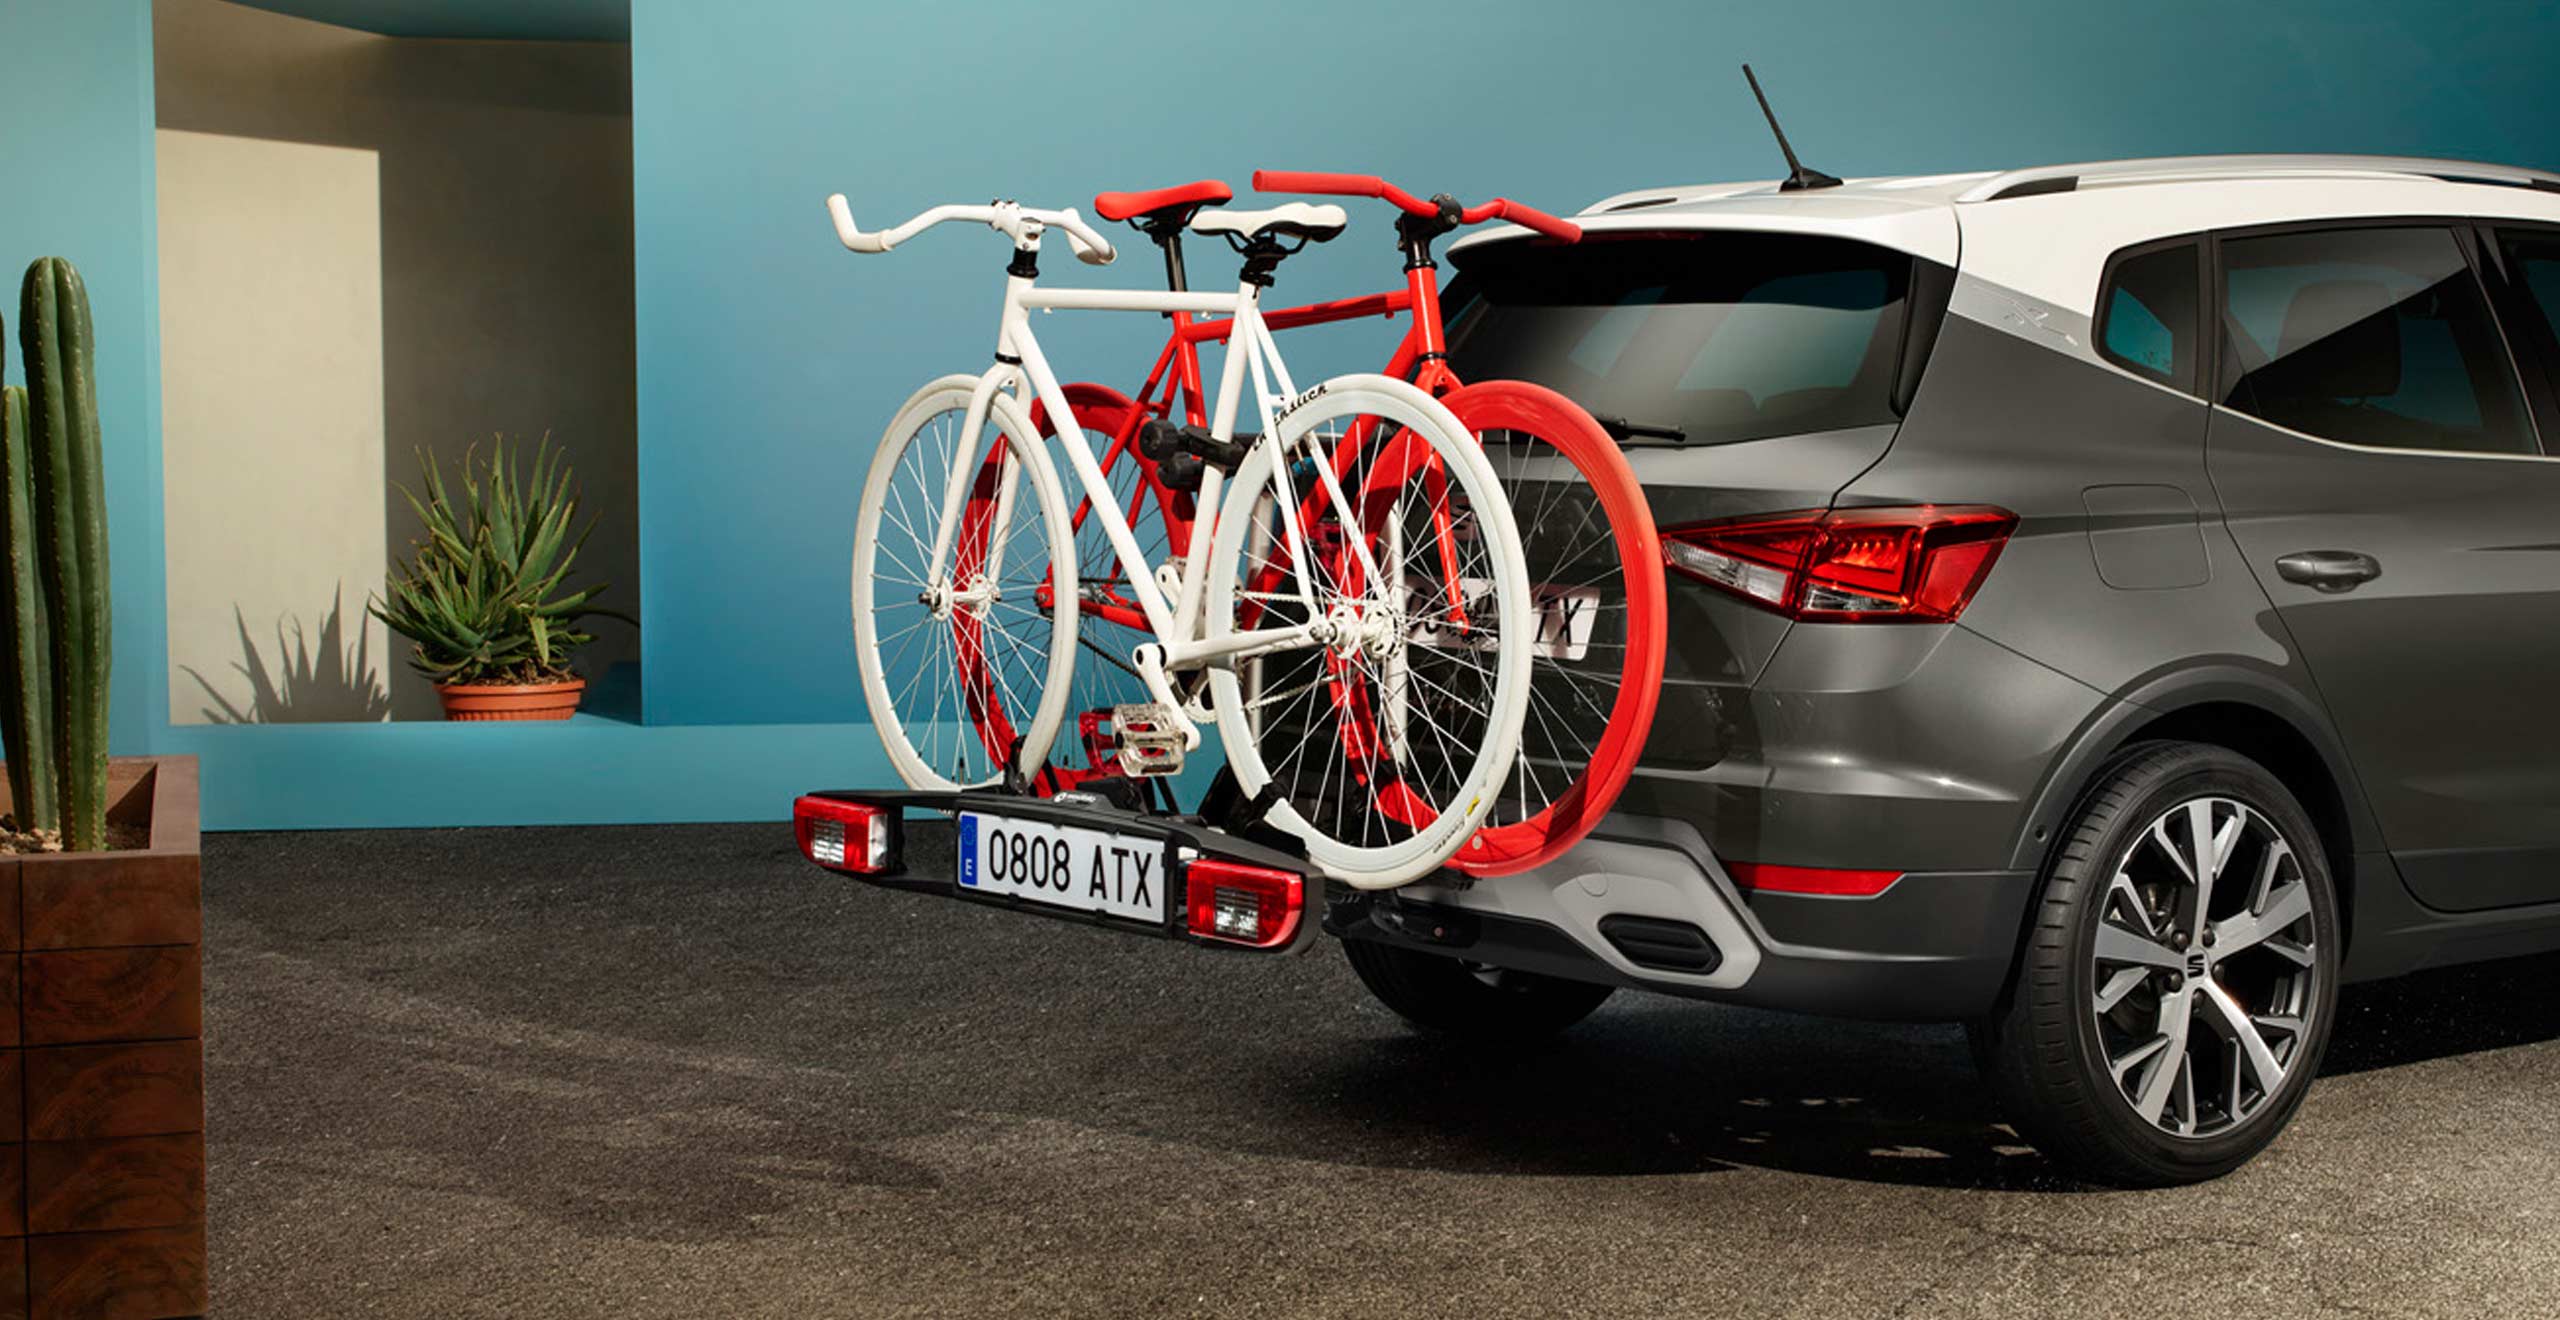 SEAT Arona dark camouflage con soporte para remolque de bicicletas.